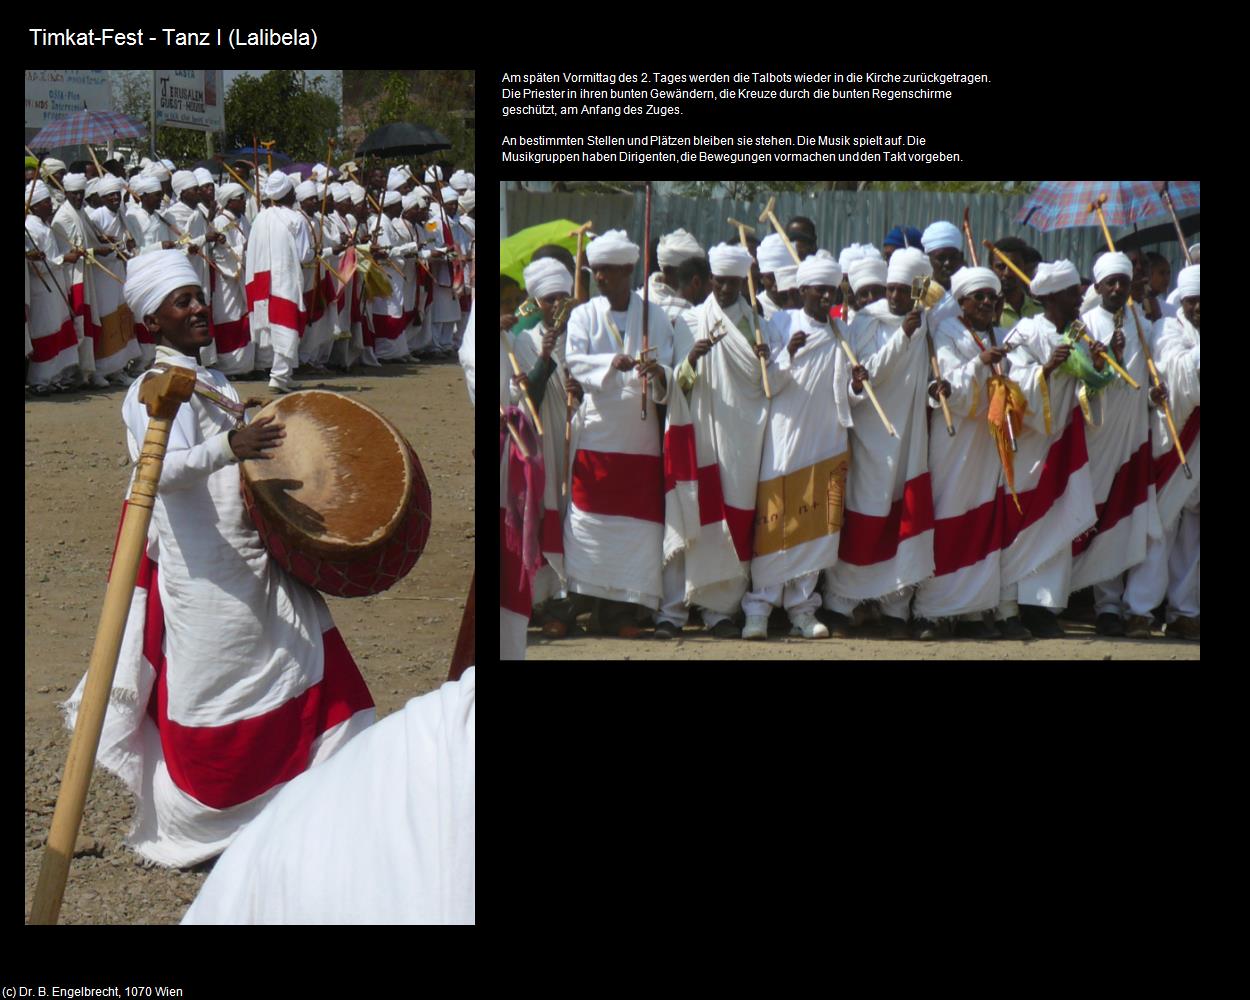 Tanz I (Timkat-Fest) in Äthiopien